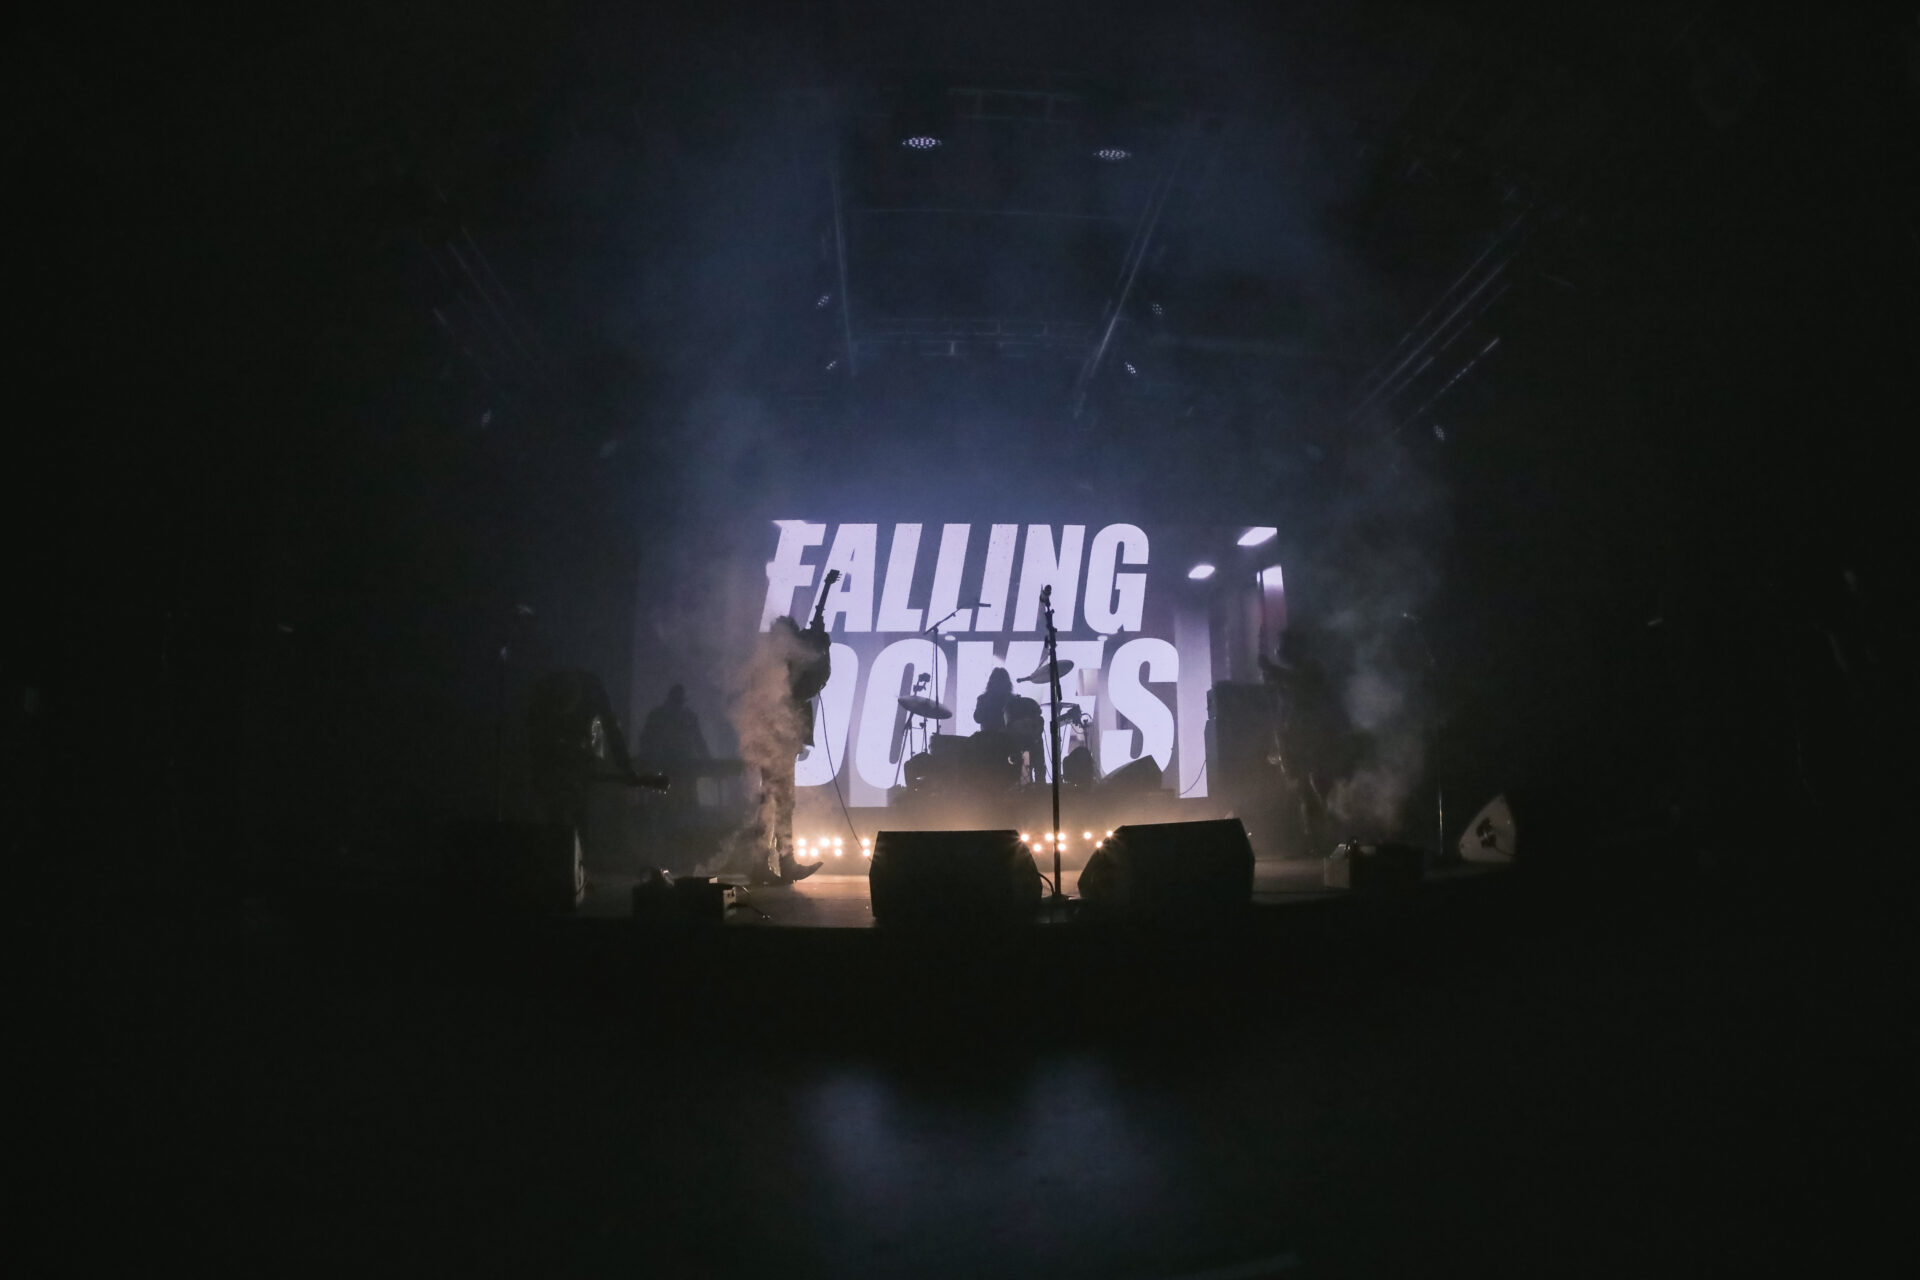 FOR IMMEDIATE RELEASE “Lightning Strikes Back” The Falling Doves return to Australia December 2022 with New Tour – Album